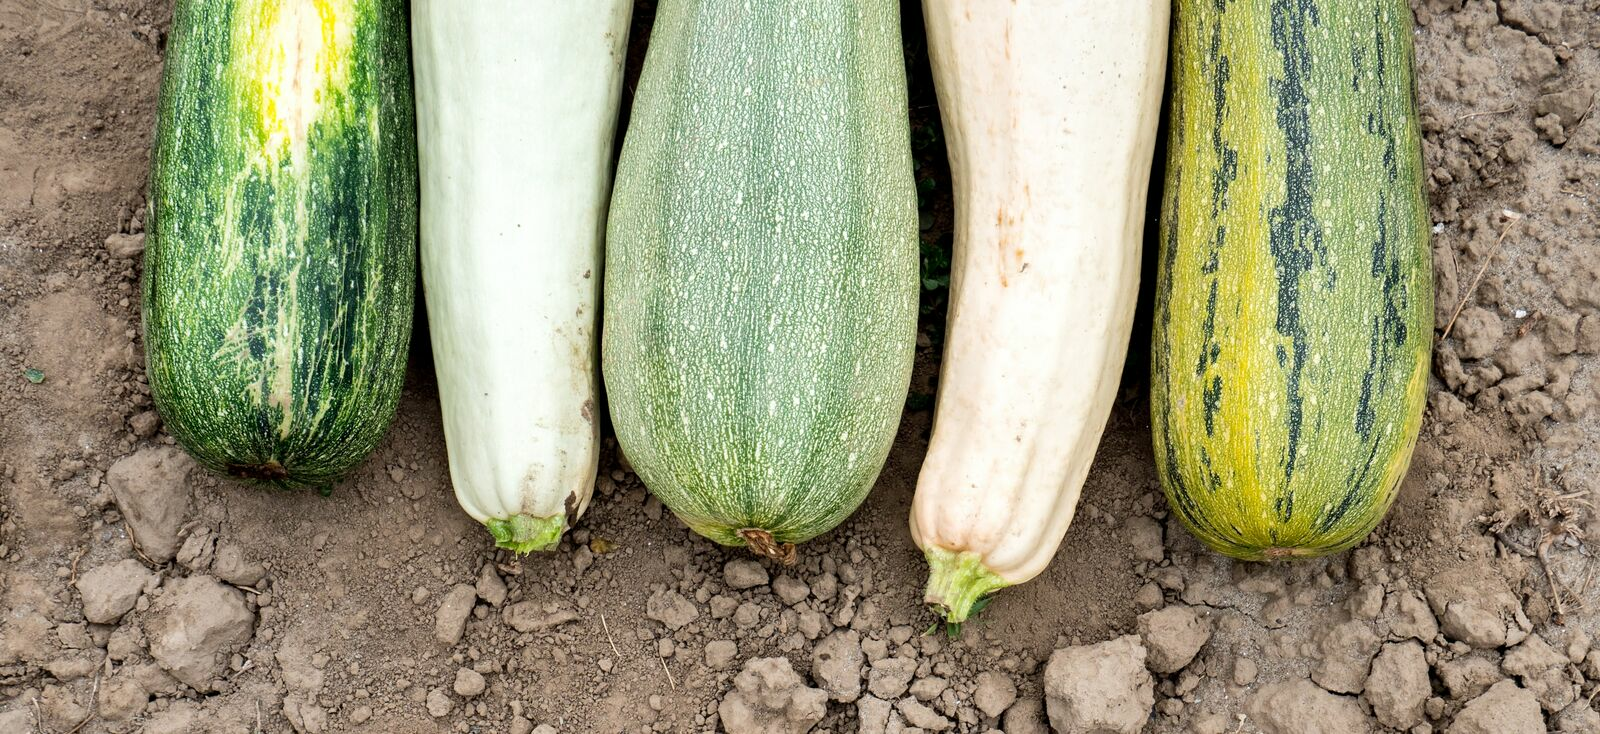 Runde, gelbe und alte Zucchini-Sorten: eine Übersicht